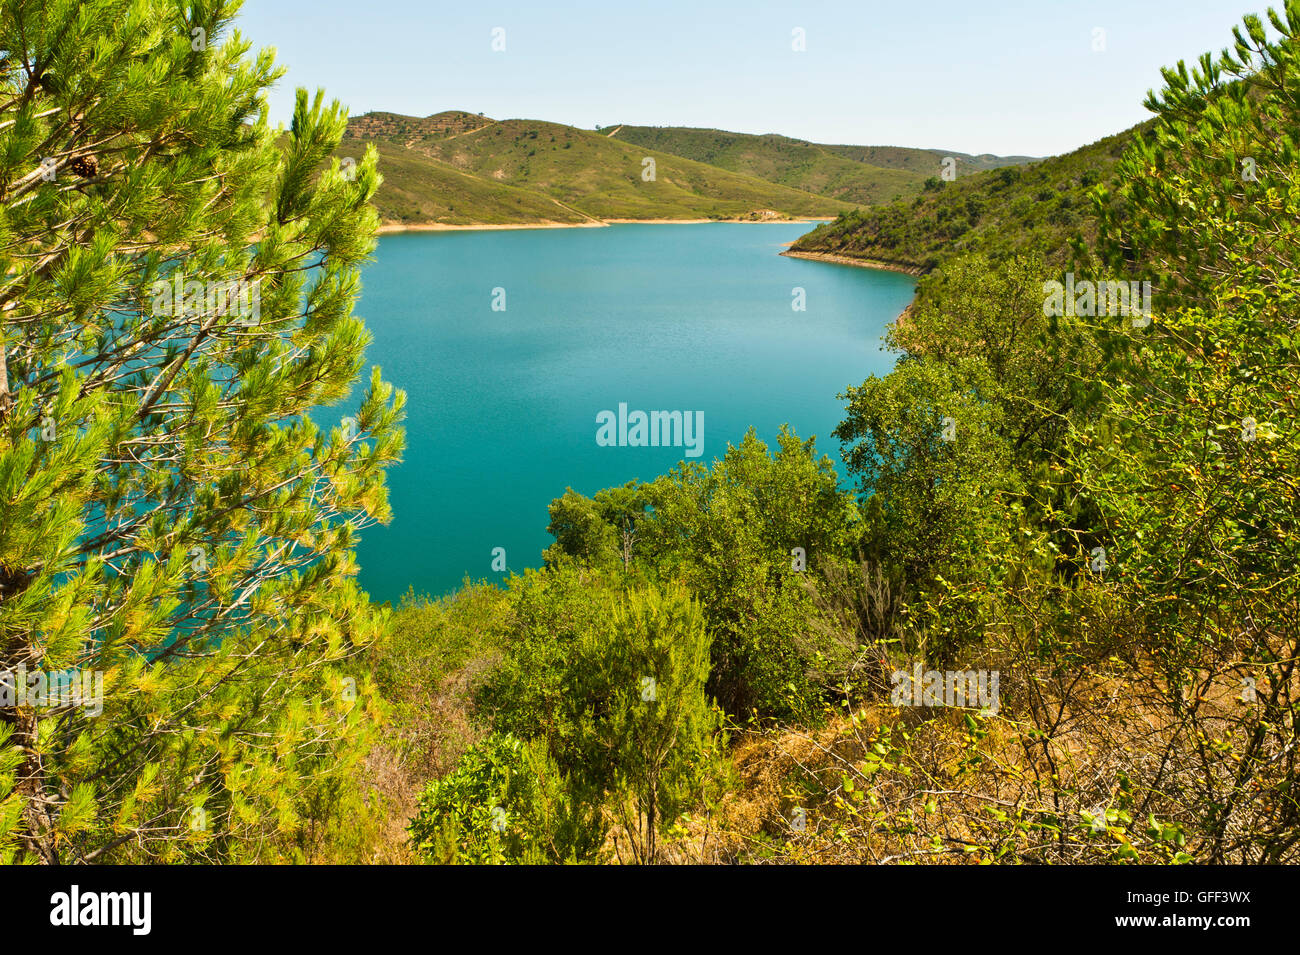 Lake near Funcho de Diante near São Bartolomeu de Messines, Algarve, Portugal Stock Photo